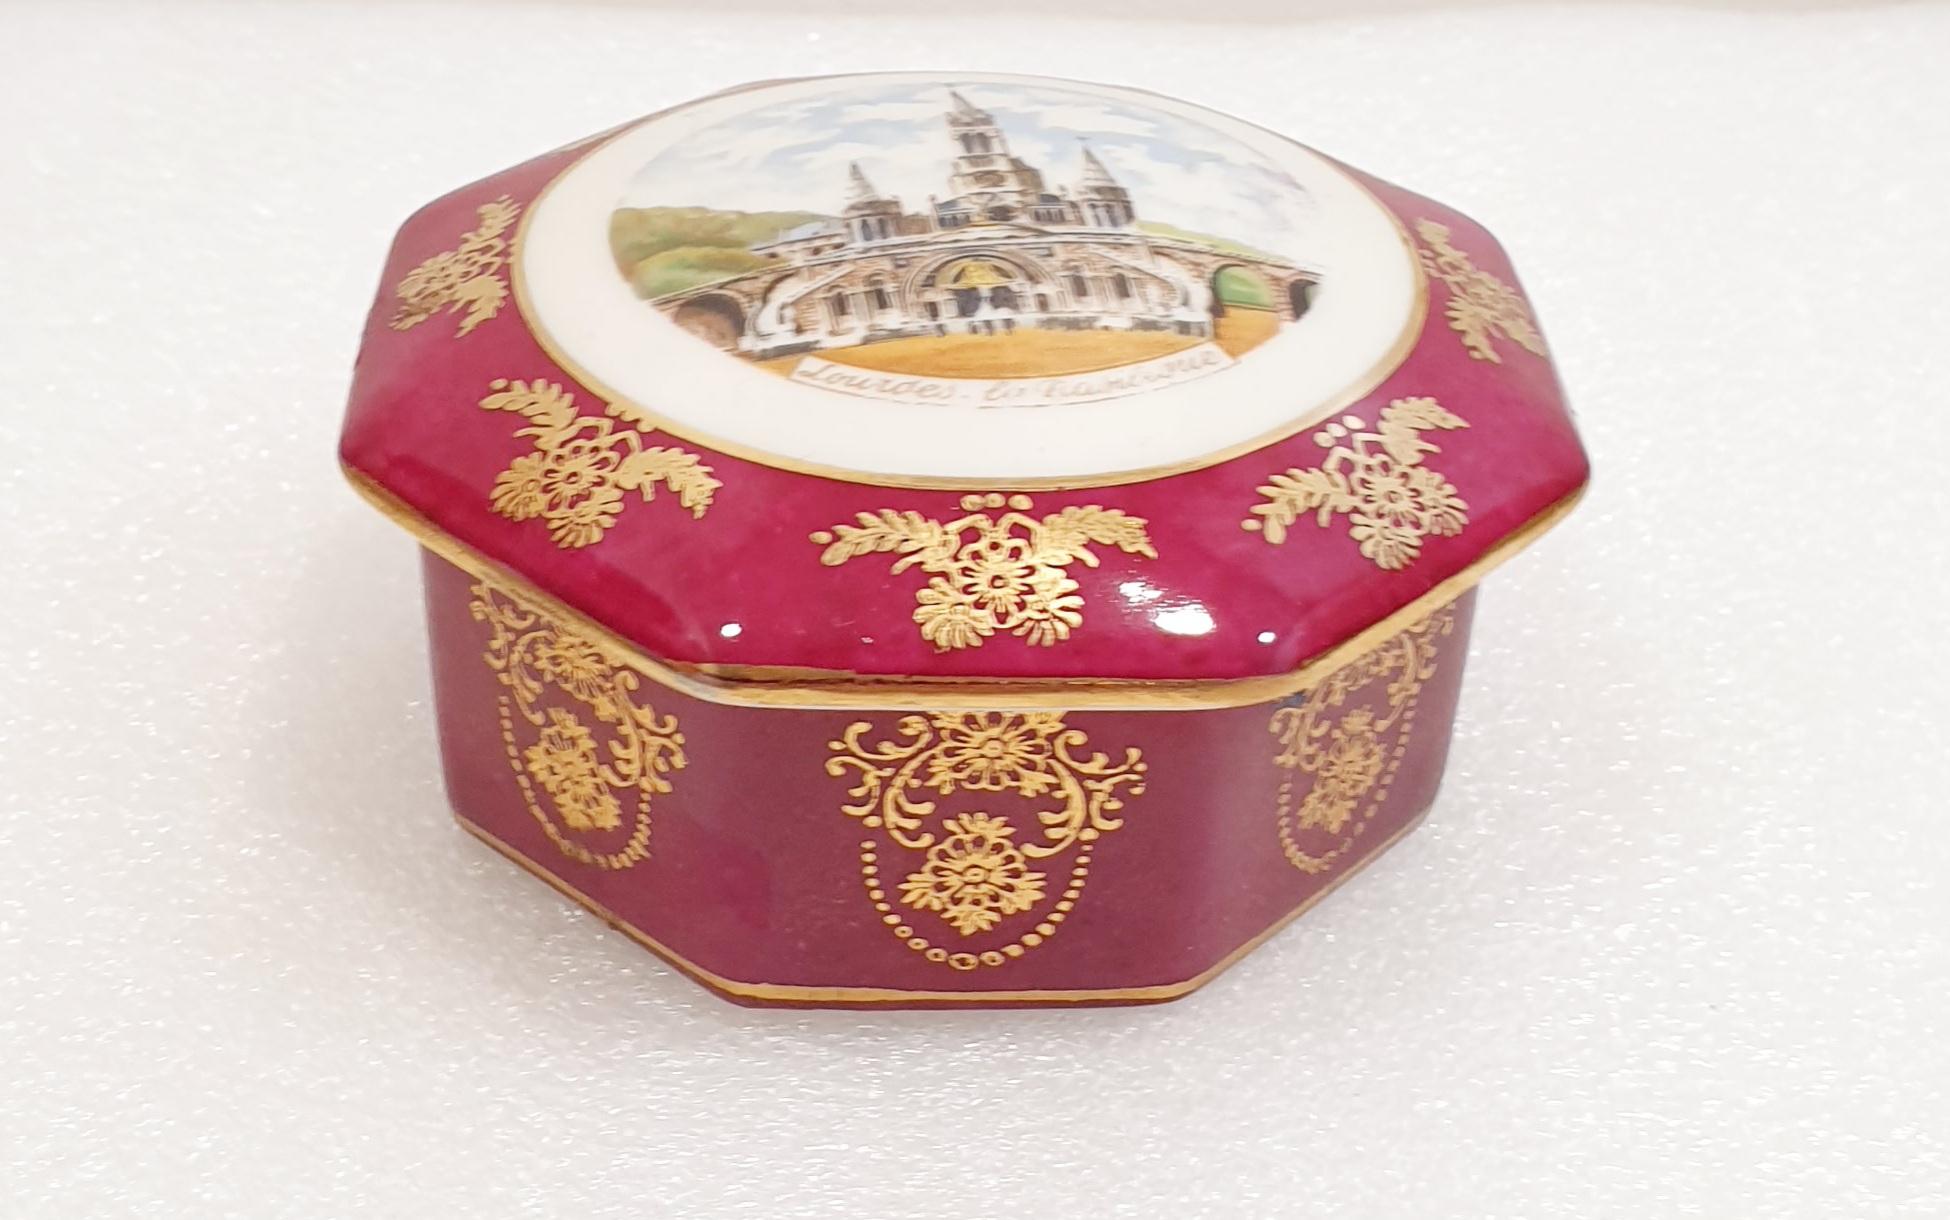 Lourdes Limoges France Vintage Round Porcelain Garnet Gold Trinket Box
Elegant coffret à bijoux octogonal vintage de Limoges.
C'est le cadeau idéal pour quelqu'un de spécial.
Dimensions :
Diamètre 11 cm (4,33 pouces)
Hauteur 5 cm (1,96